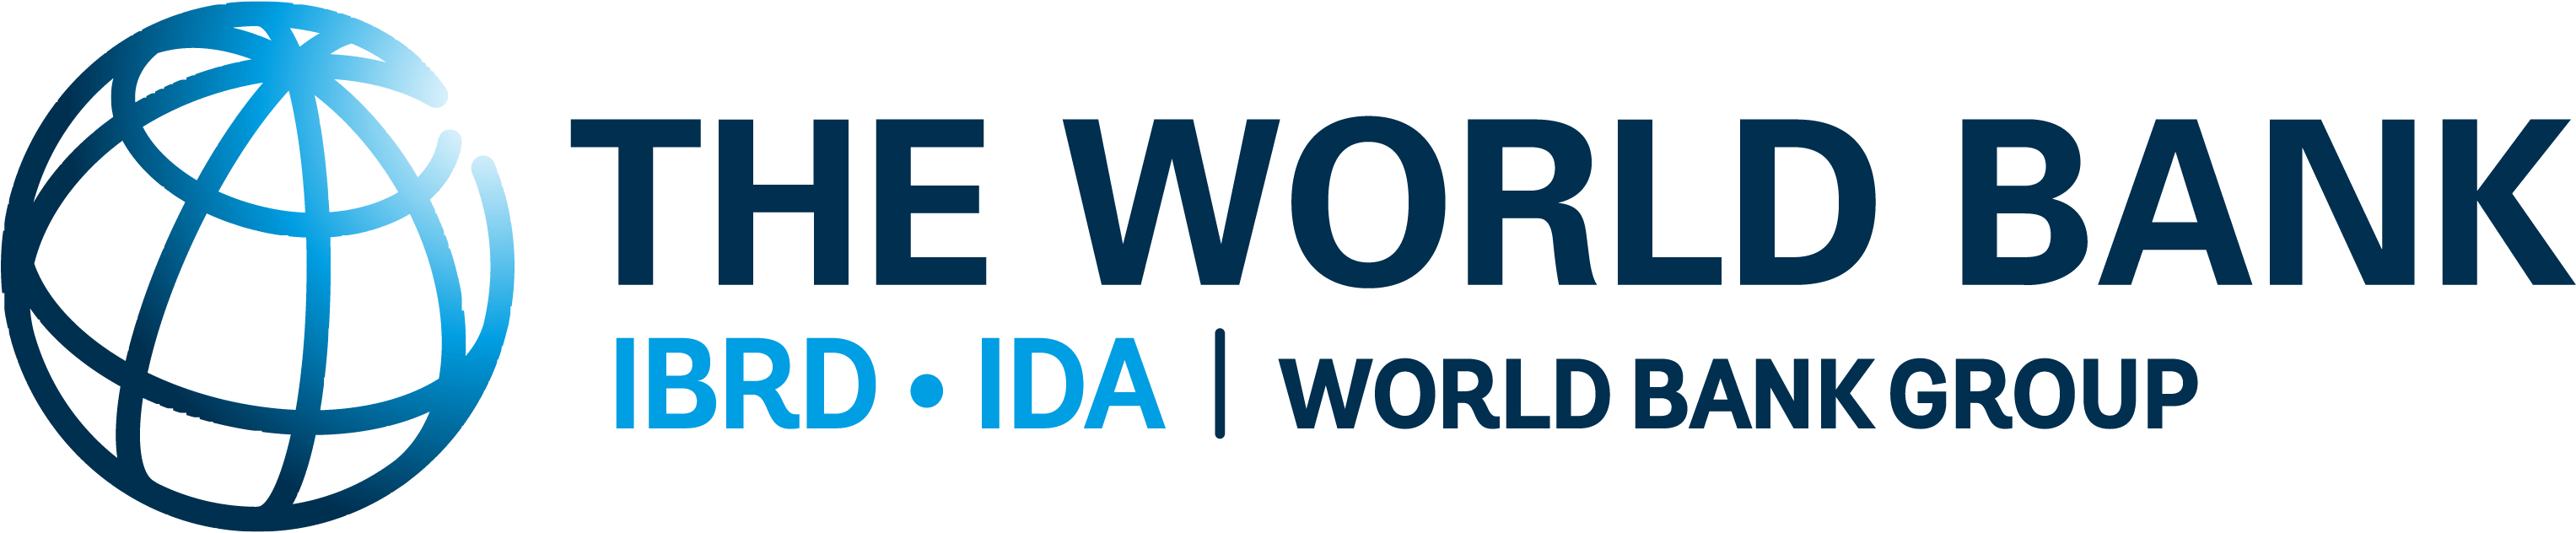 World Bank Logo [World bank Group] png